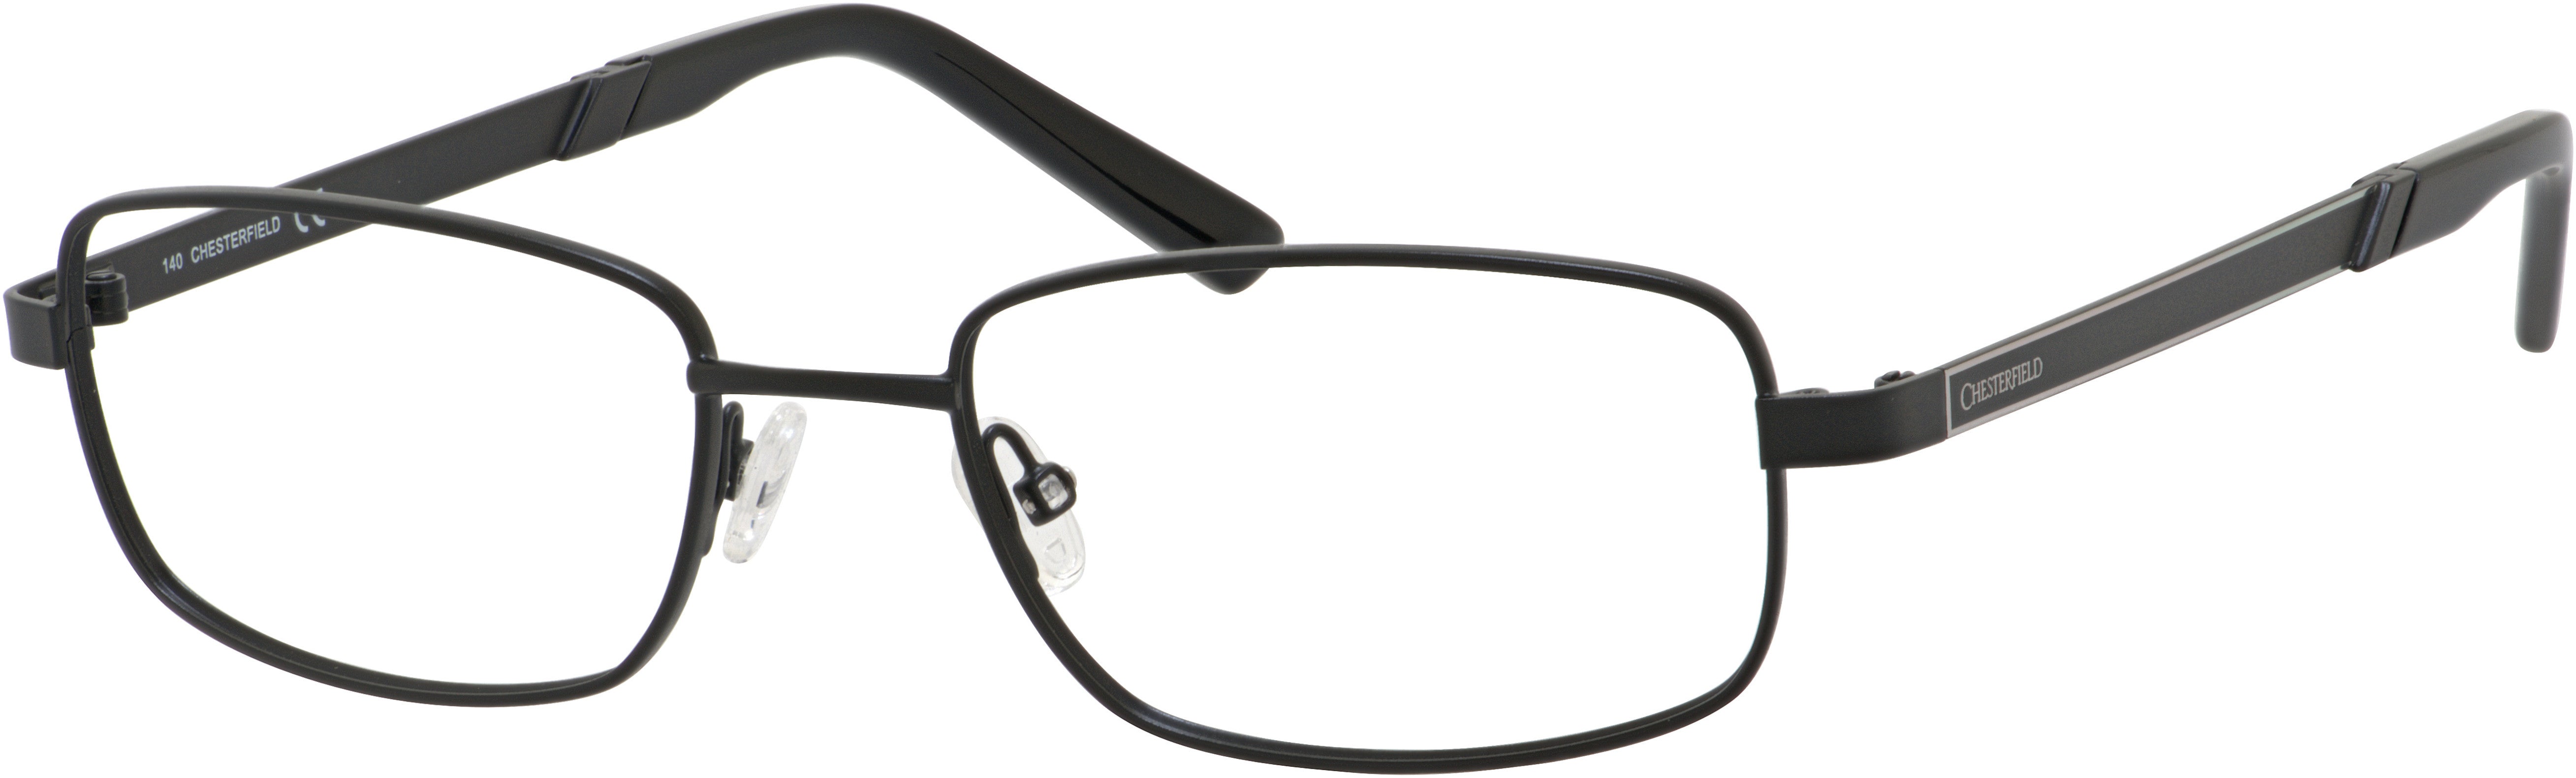  Chesterfield 884 Rectangular Eyeglasses 0003-0003  Matte Black (00 Demo Lens)